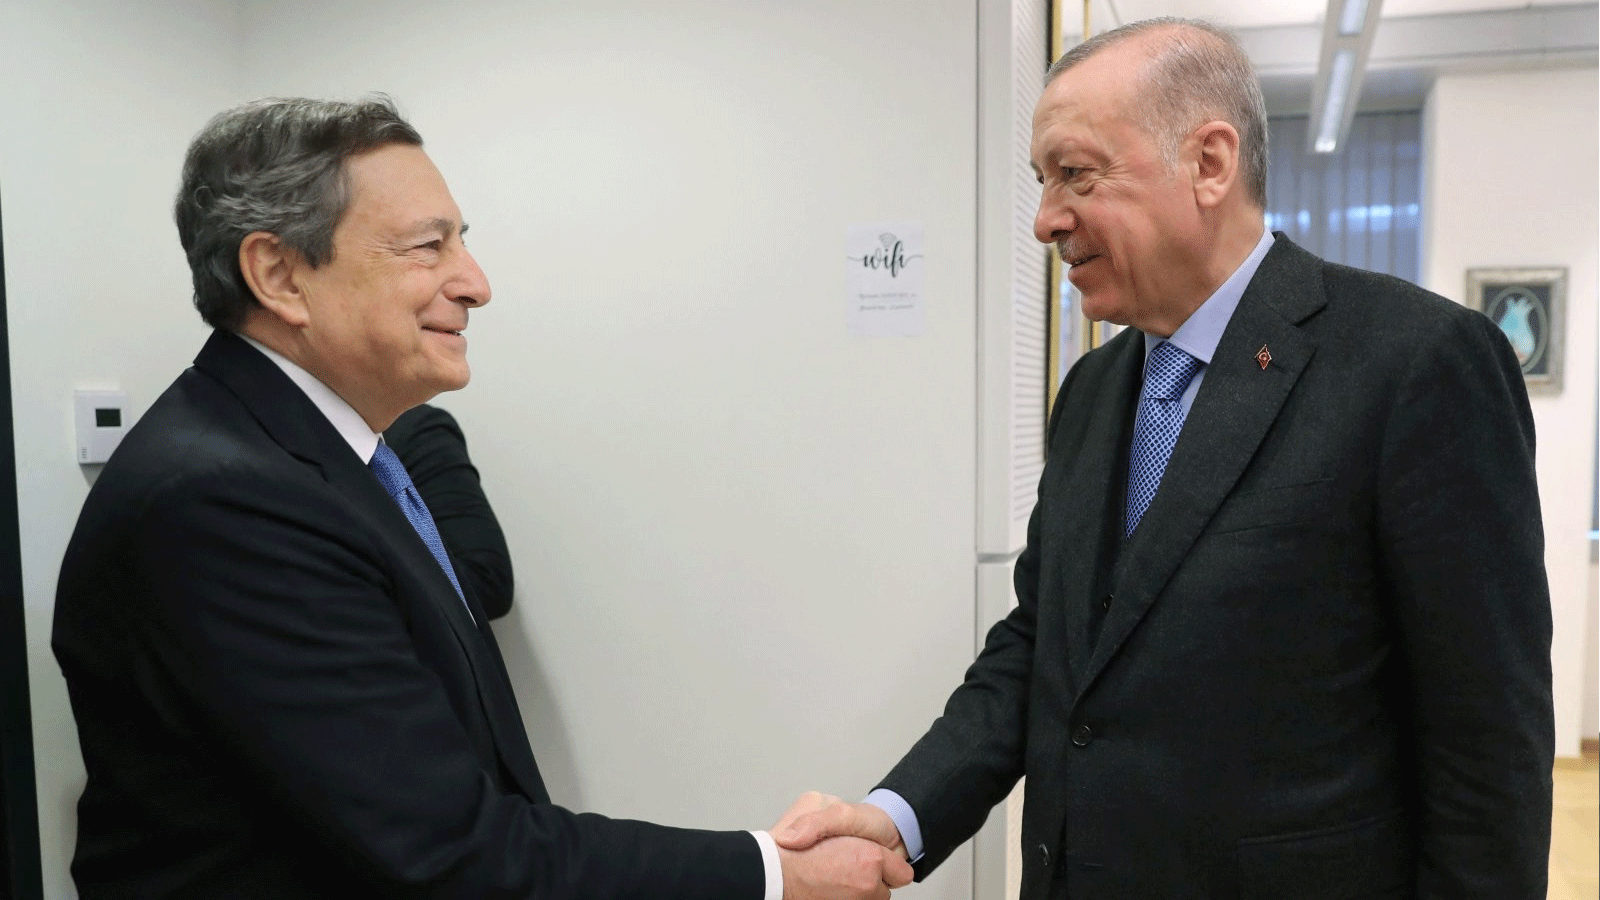 الرئيس التركي رجب طيب أردوغان (إلى اليمين) يصافح رئيس الوزراء الإيطالي ماريو دراغي خلال القمة الاستثنائية لرؤساء دول وحكومات الناتو في بروكسل. 24 آذار\مارس 2022.